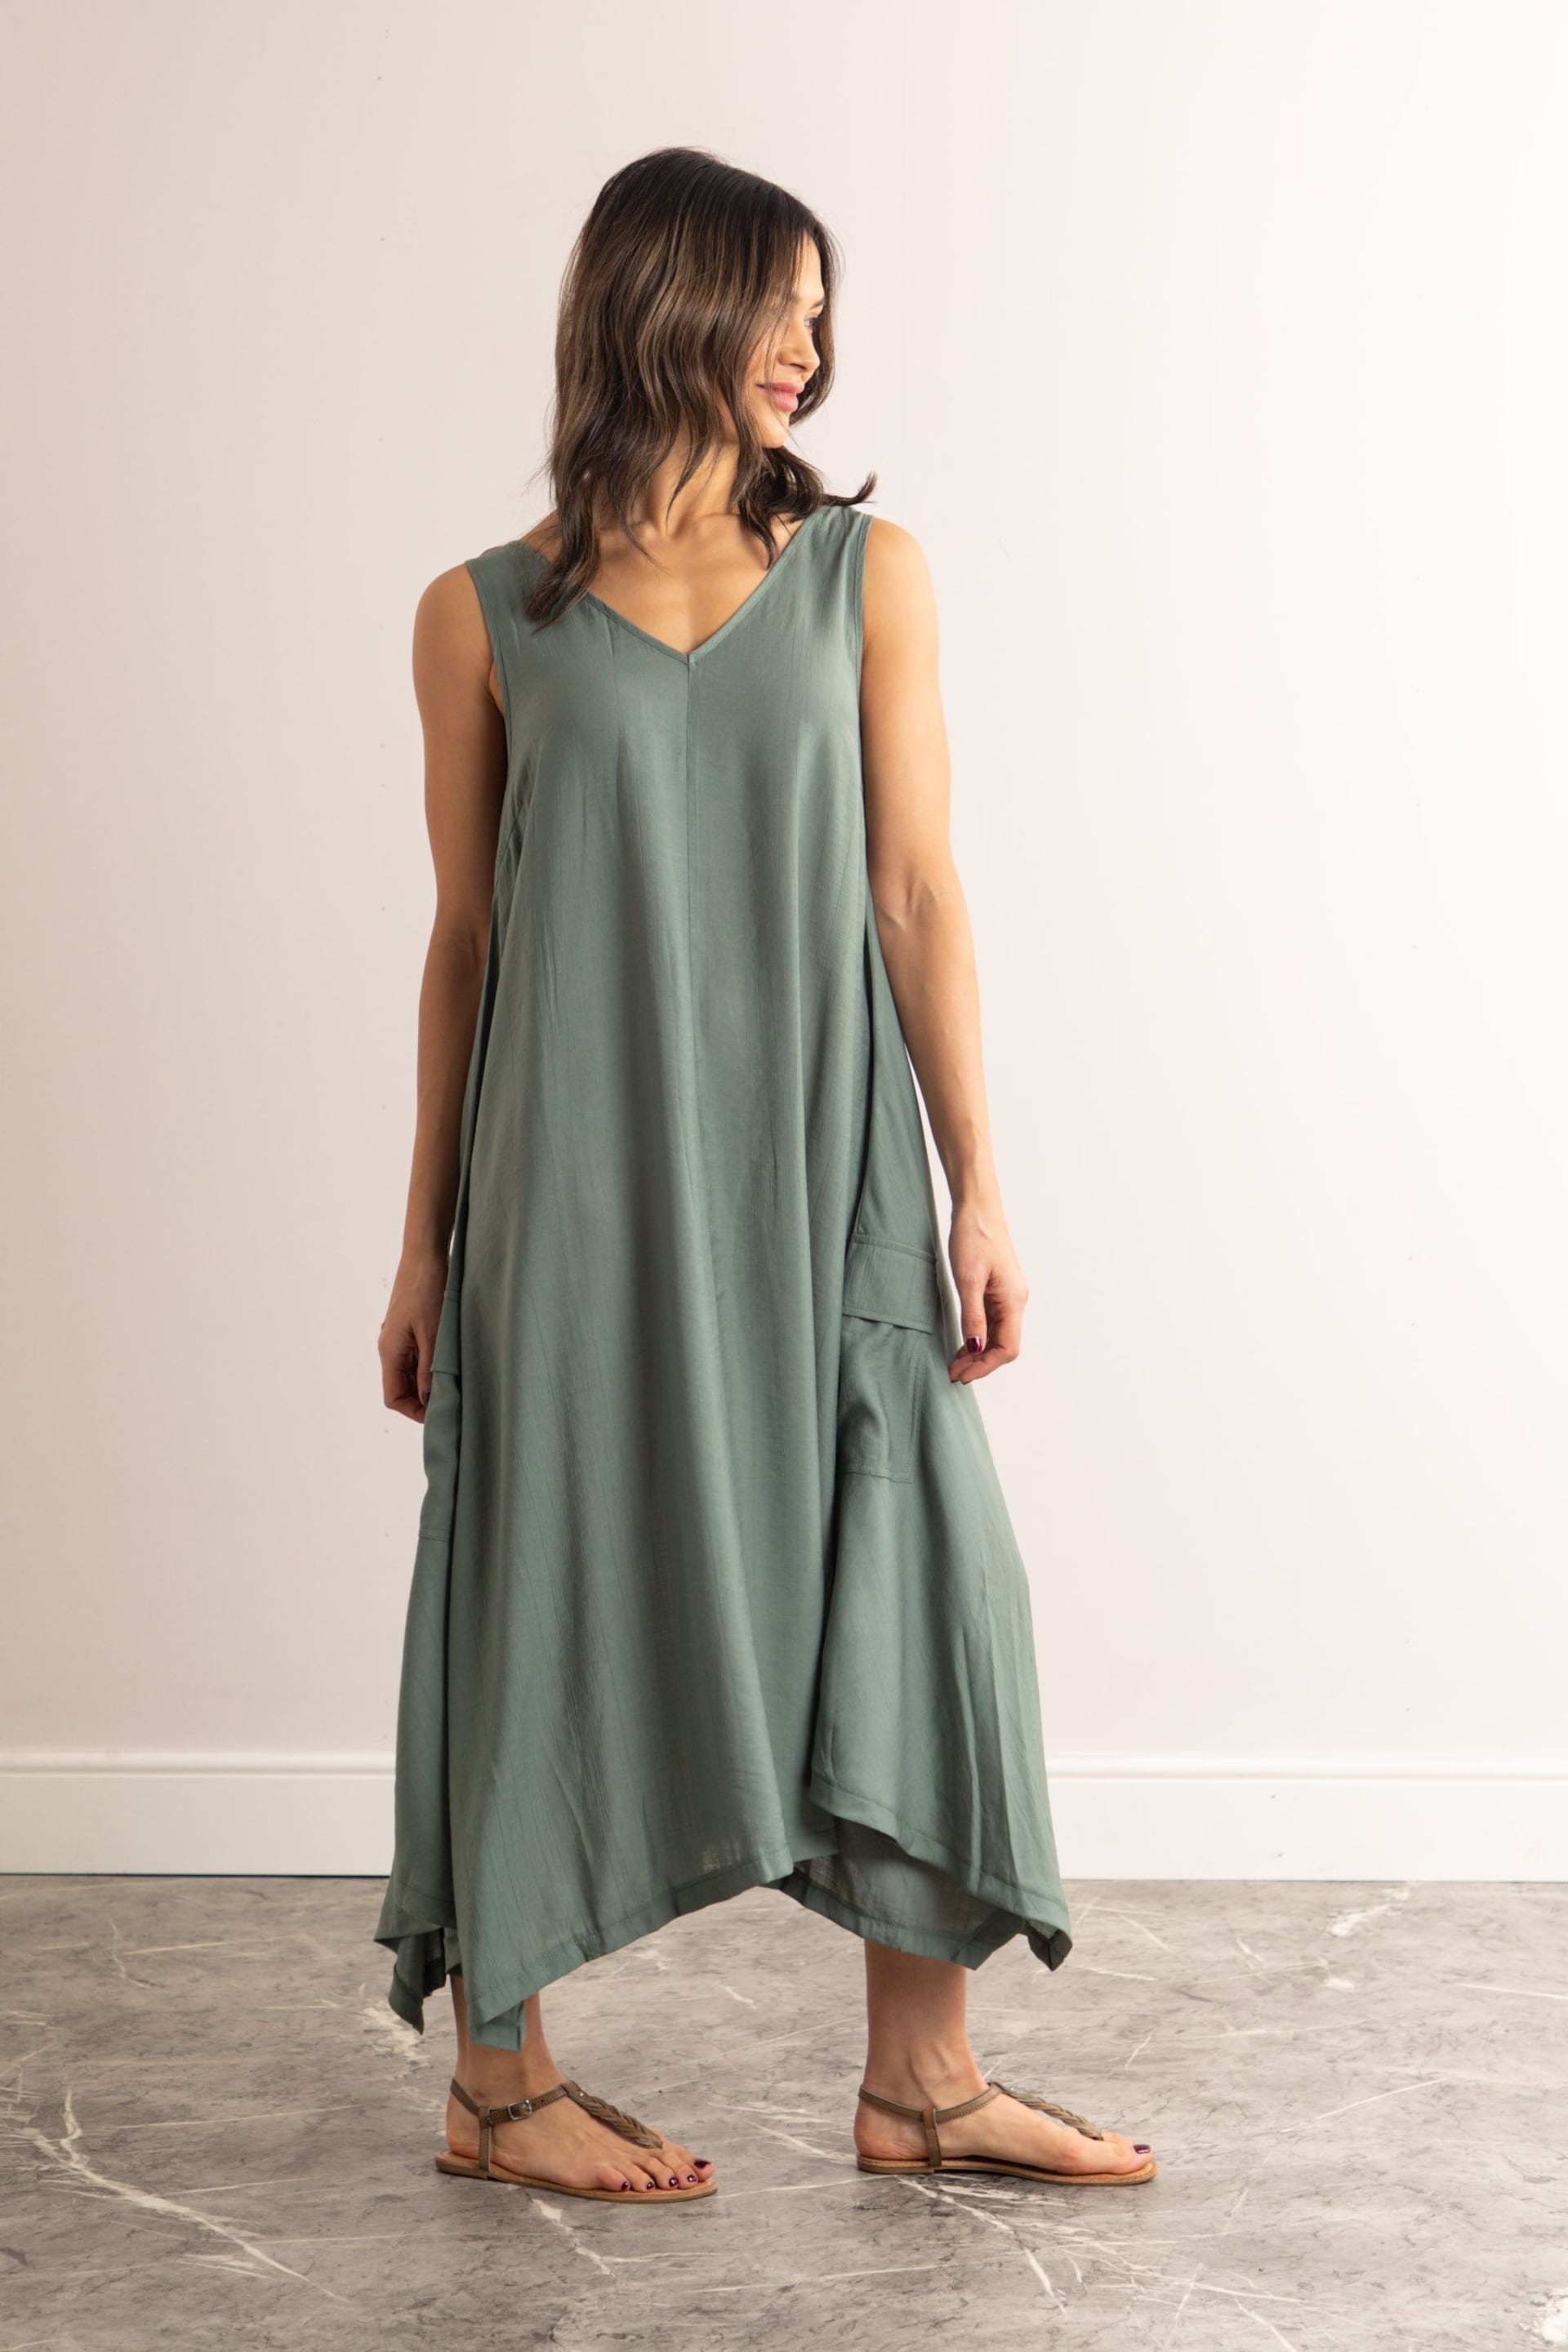 Lakeland Clothing Hollie V-Neck Sleeveless Maxi Dress - Image 3 of 3